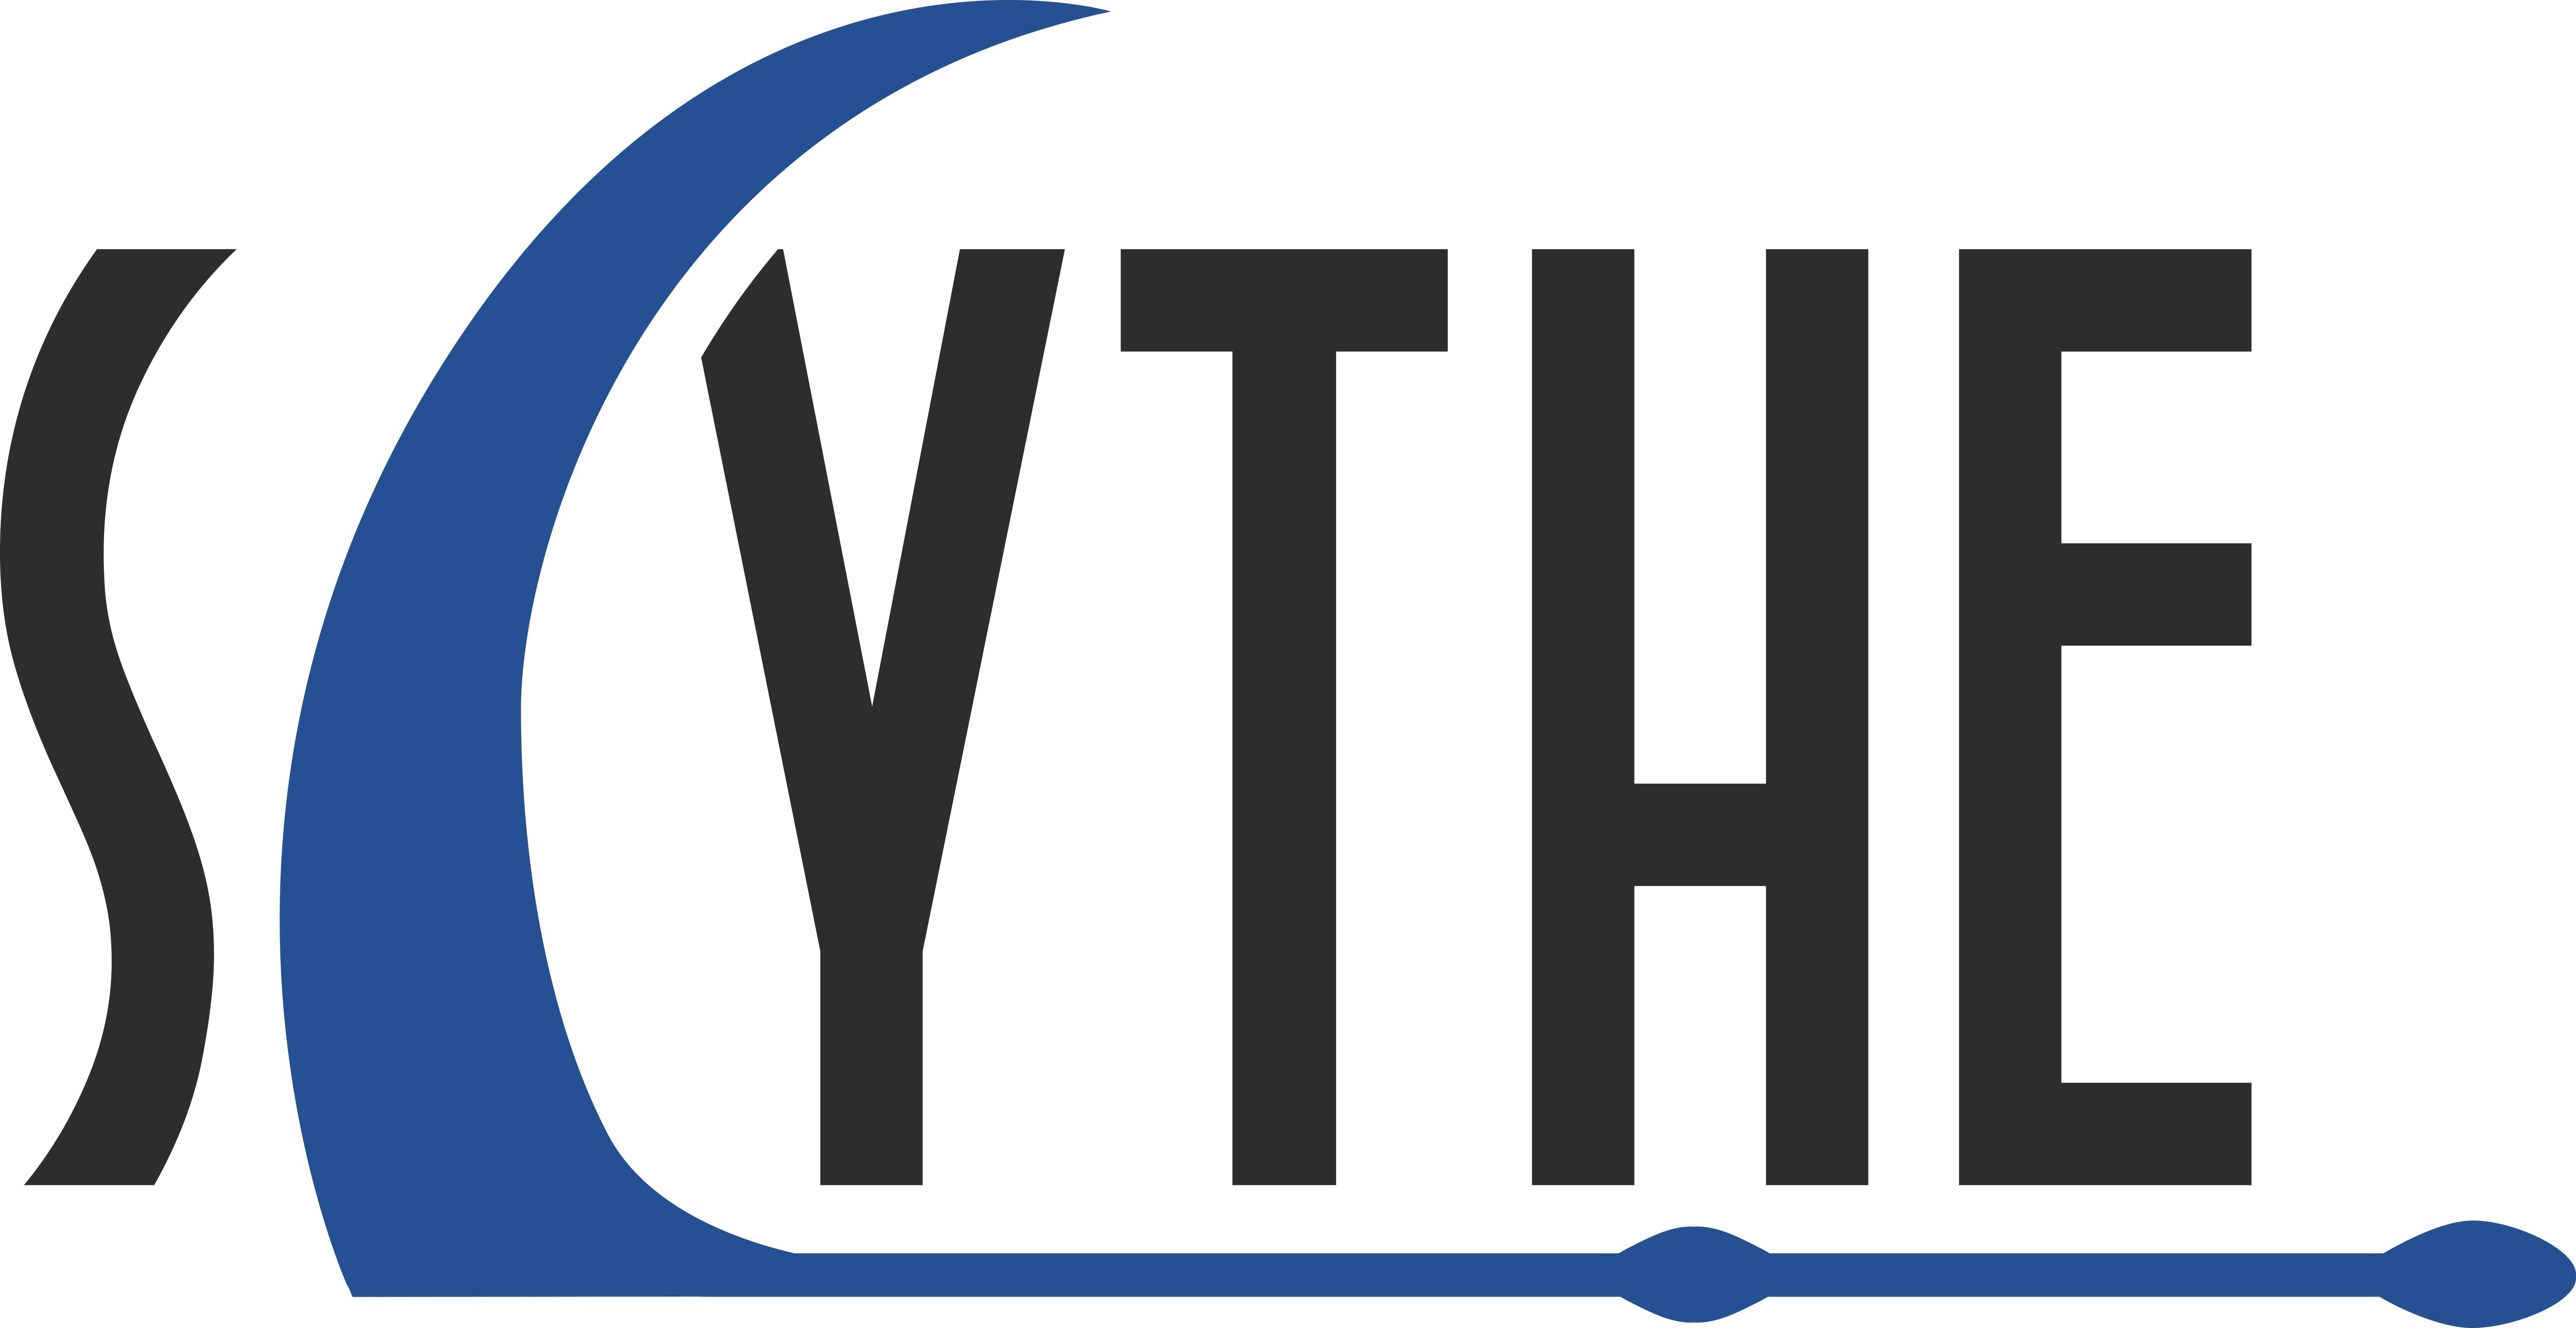 Scythe_Logo